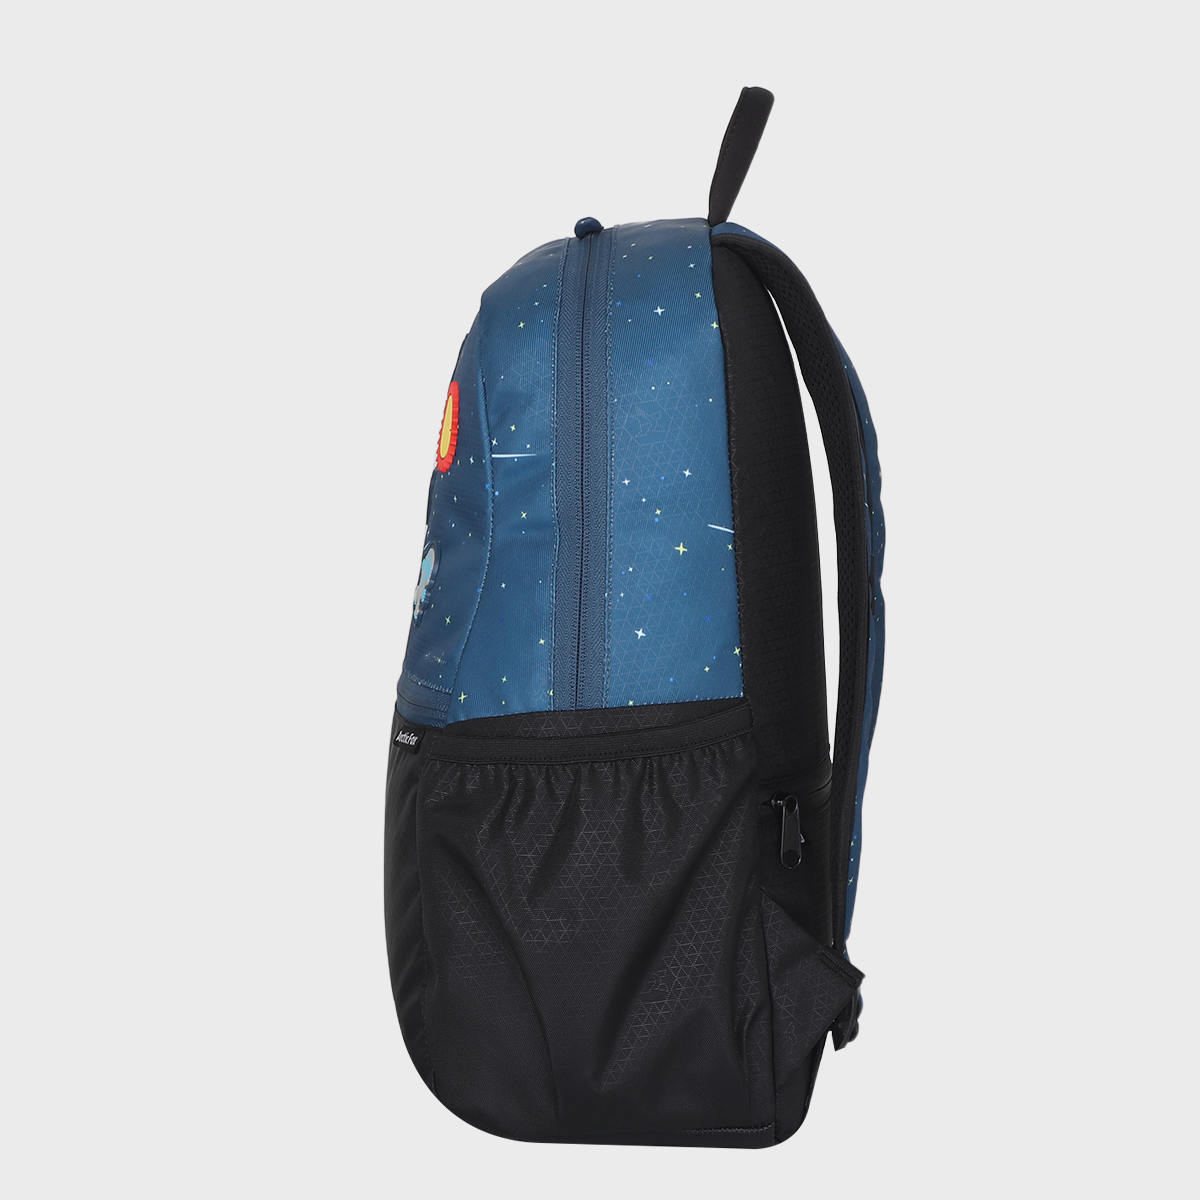 Arctic Fox Habit 17L Backpack